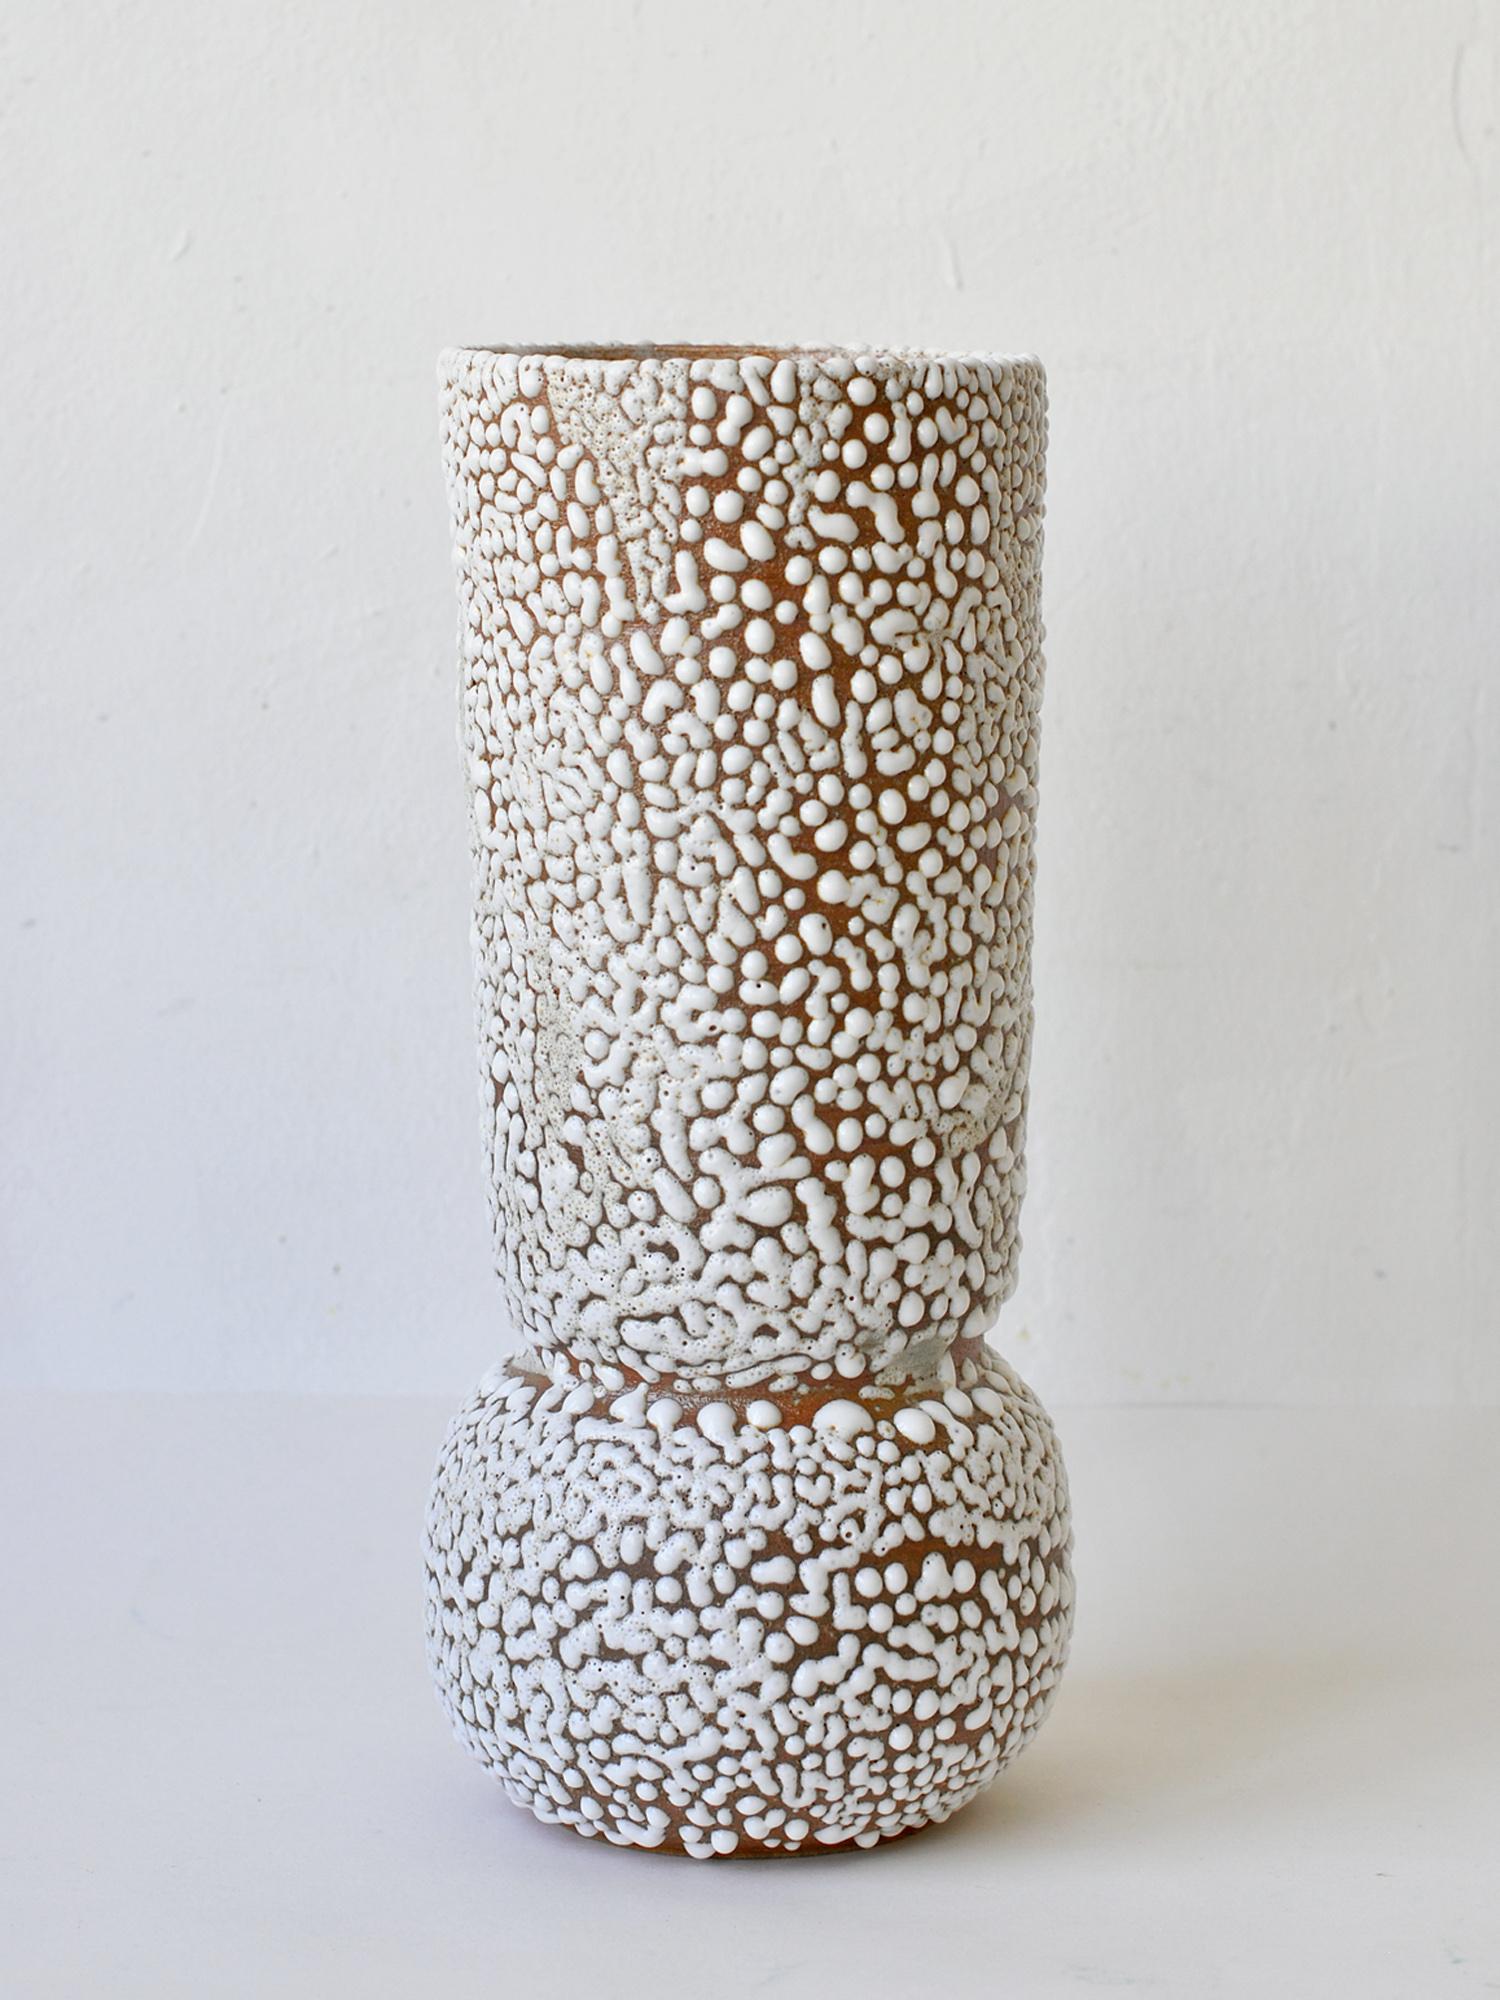 C-015 Vase en grès blanc par Moïo Studio
Dimensions : D14 x W14 x H30 cm
MATERIAL : Glaçure blanche crawlée sur grès fauve
Fabriqué à la main sur la roue
Pièce unique, consulter pour les multiples

Artistics est le studio d'art céramique basé à